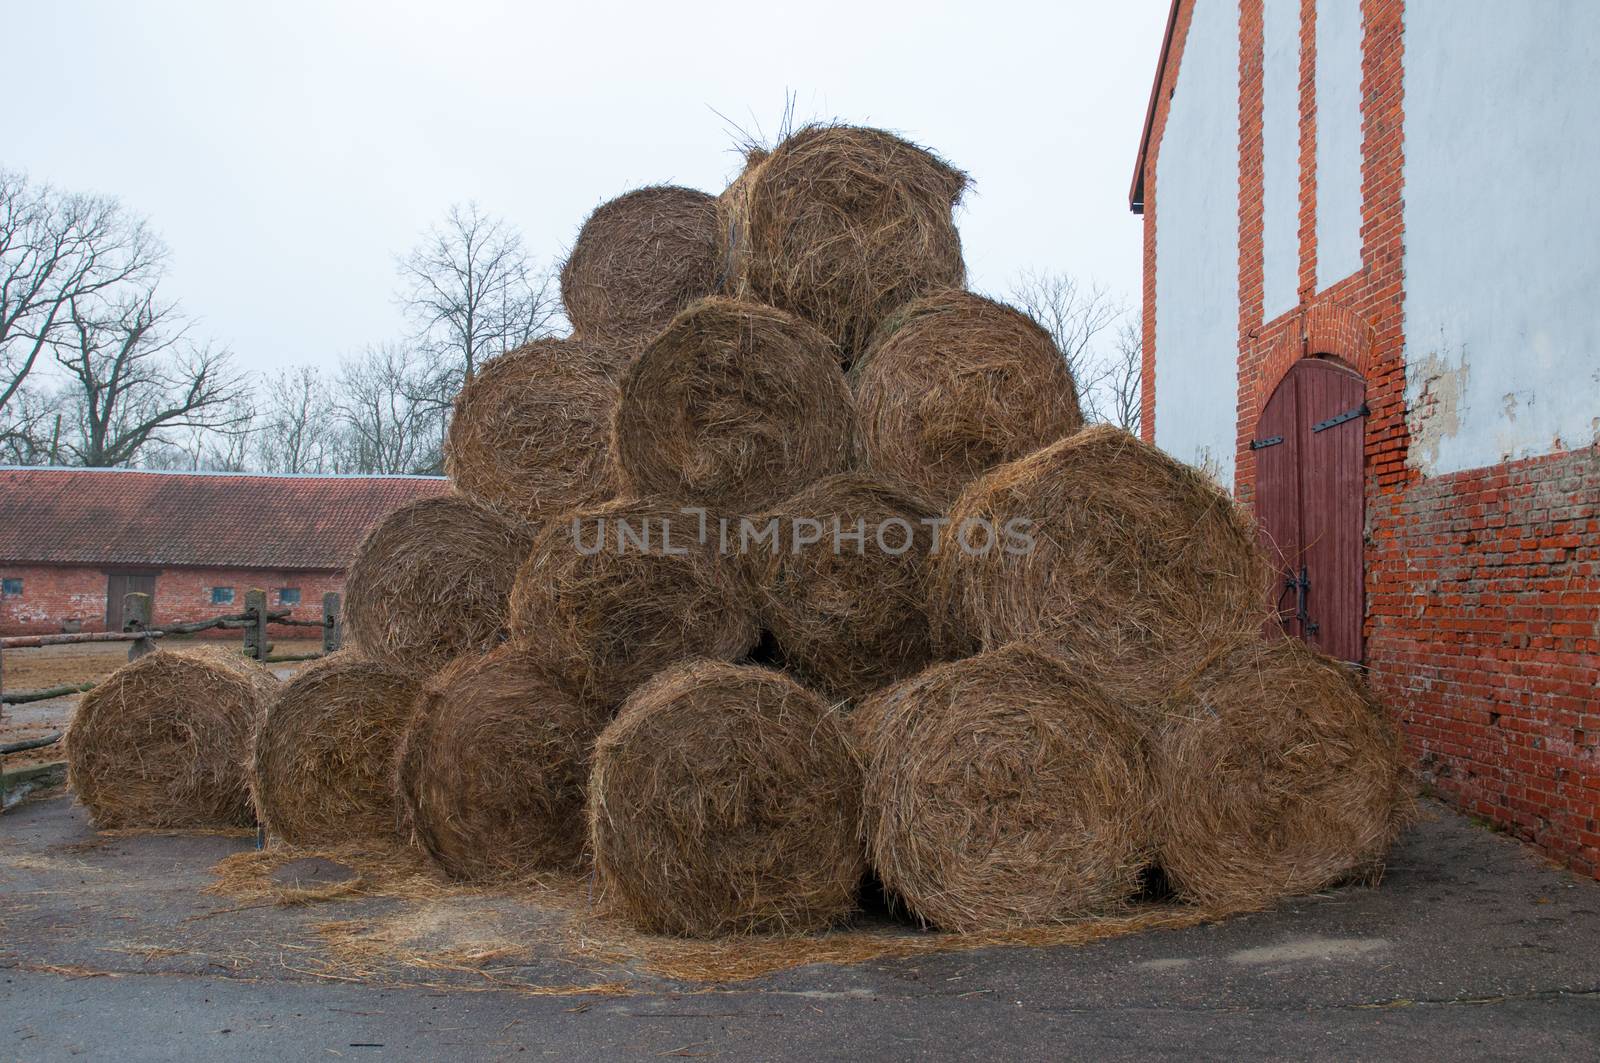 Straw bales on farmland by rook